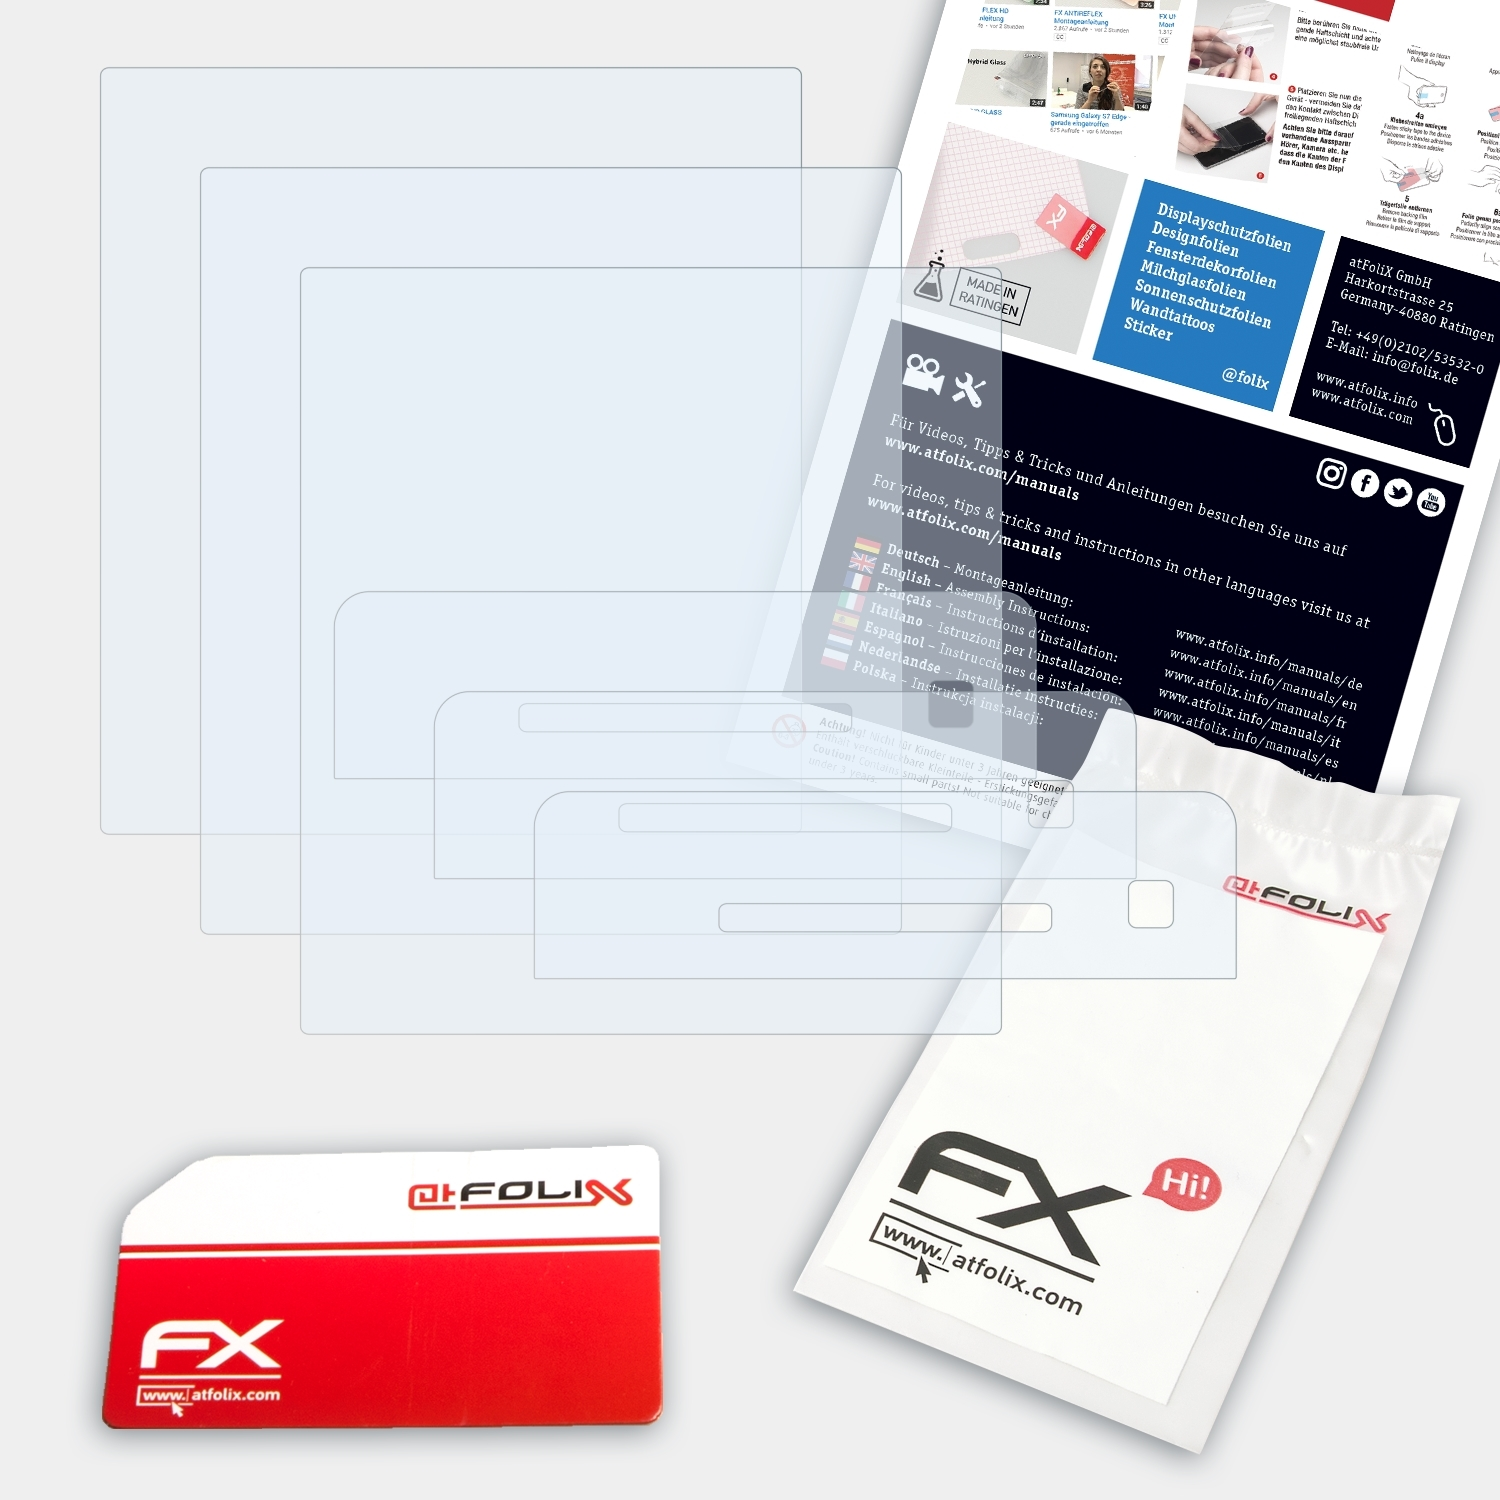 ATFOLIX 3x FX-Clear Sony-Ericsson C902) Displayschutz(für